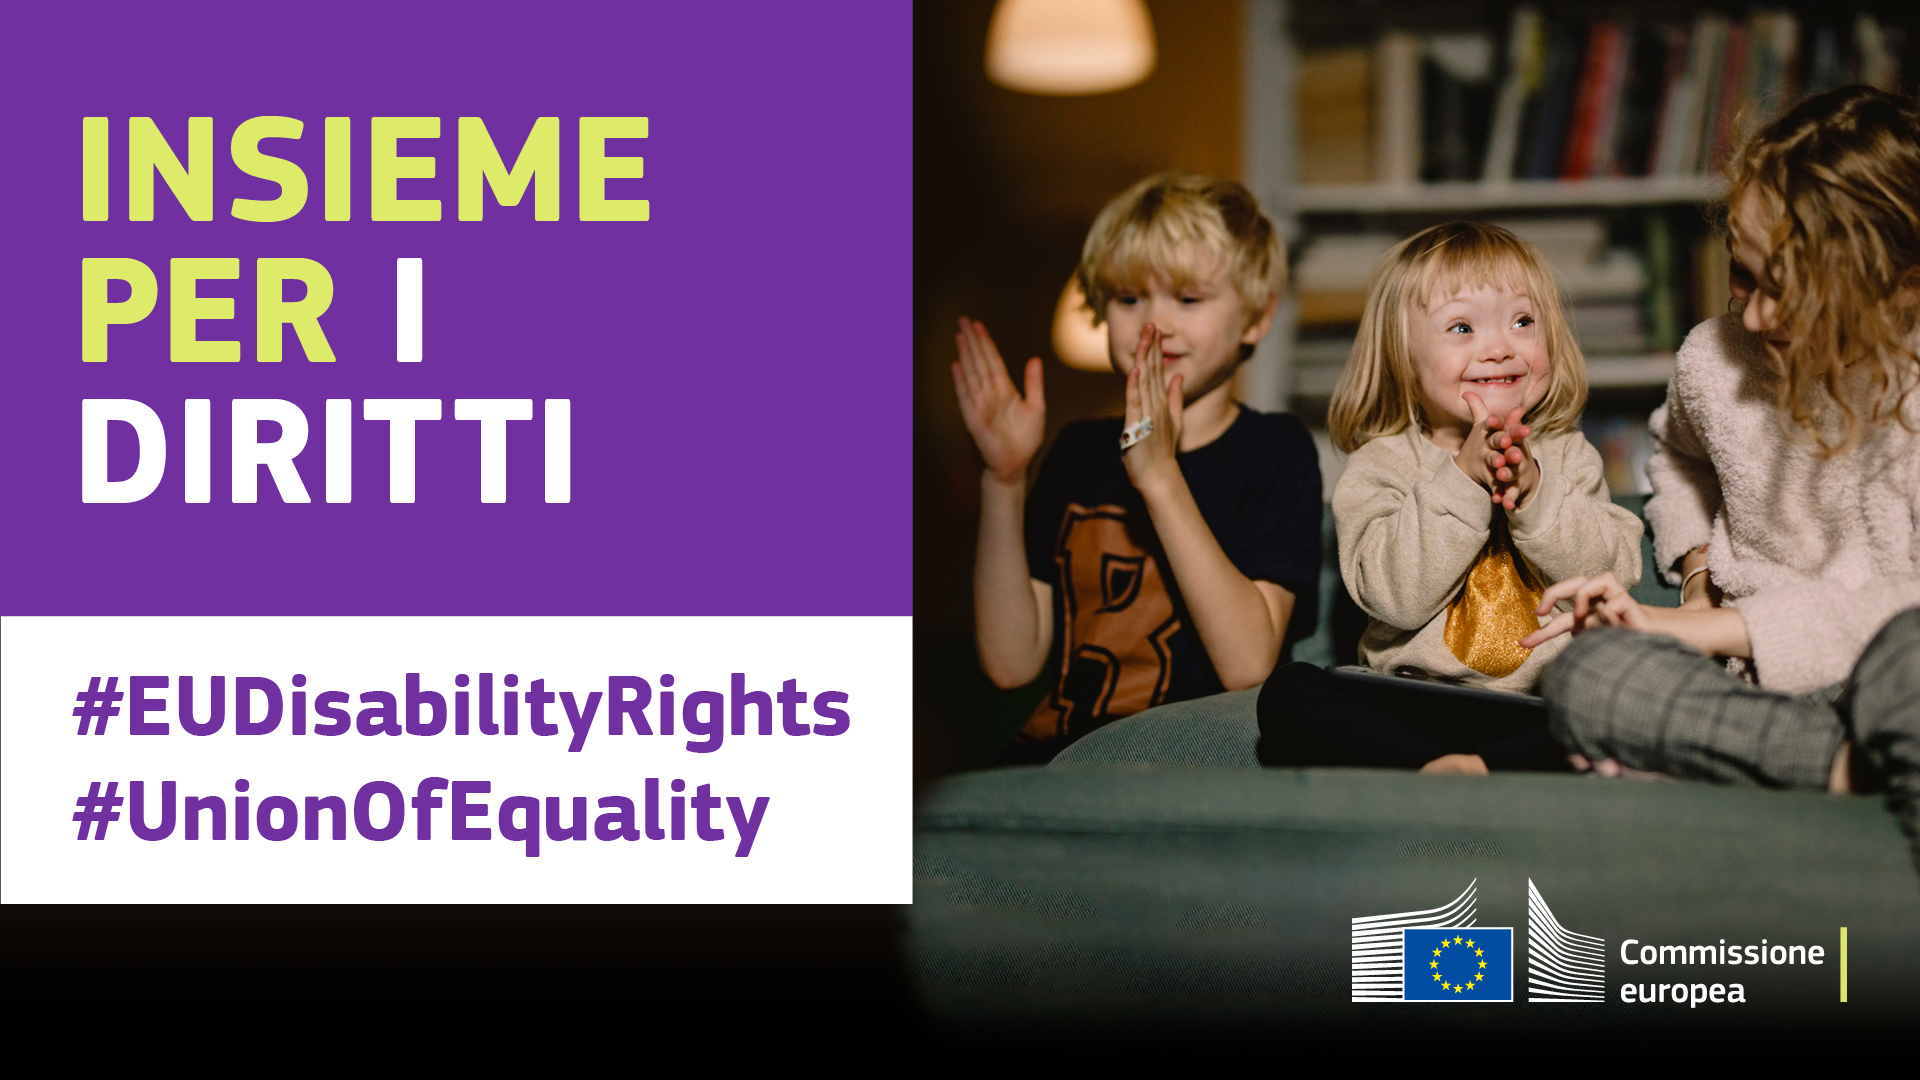 Tre bambini giocano insieme felici. Una di loro ha la sindrome di Down. Il testo recita: insieme per i diritti, #EUDisabilityRights, #UnionOfEquality.